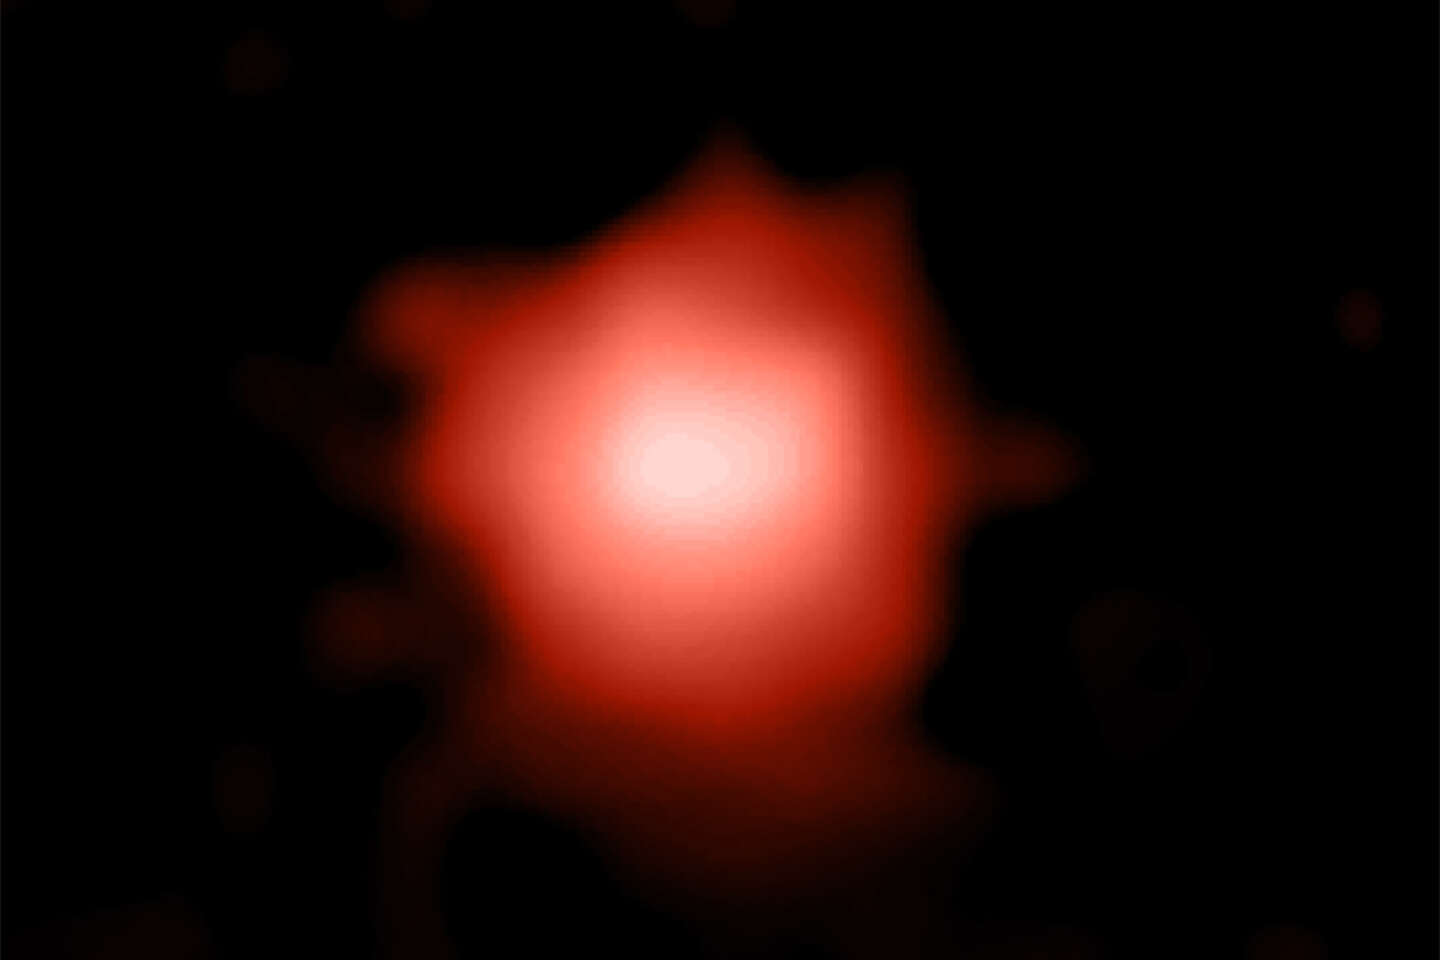 El telescopio James-Webb puede haber encontrado la galaxia más distante jamás observada